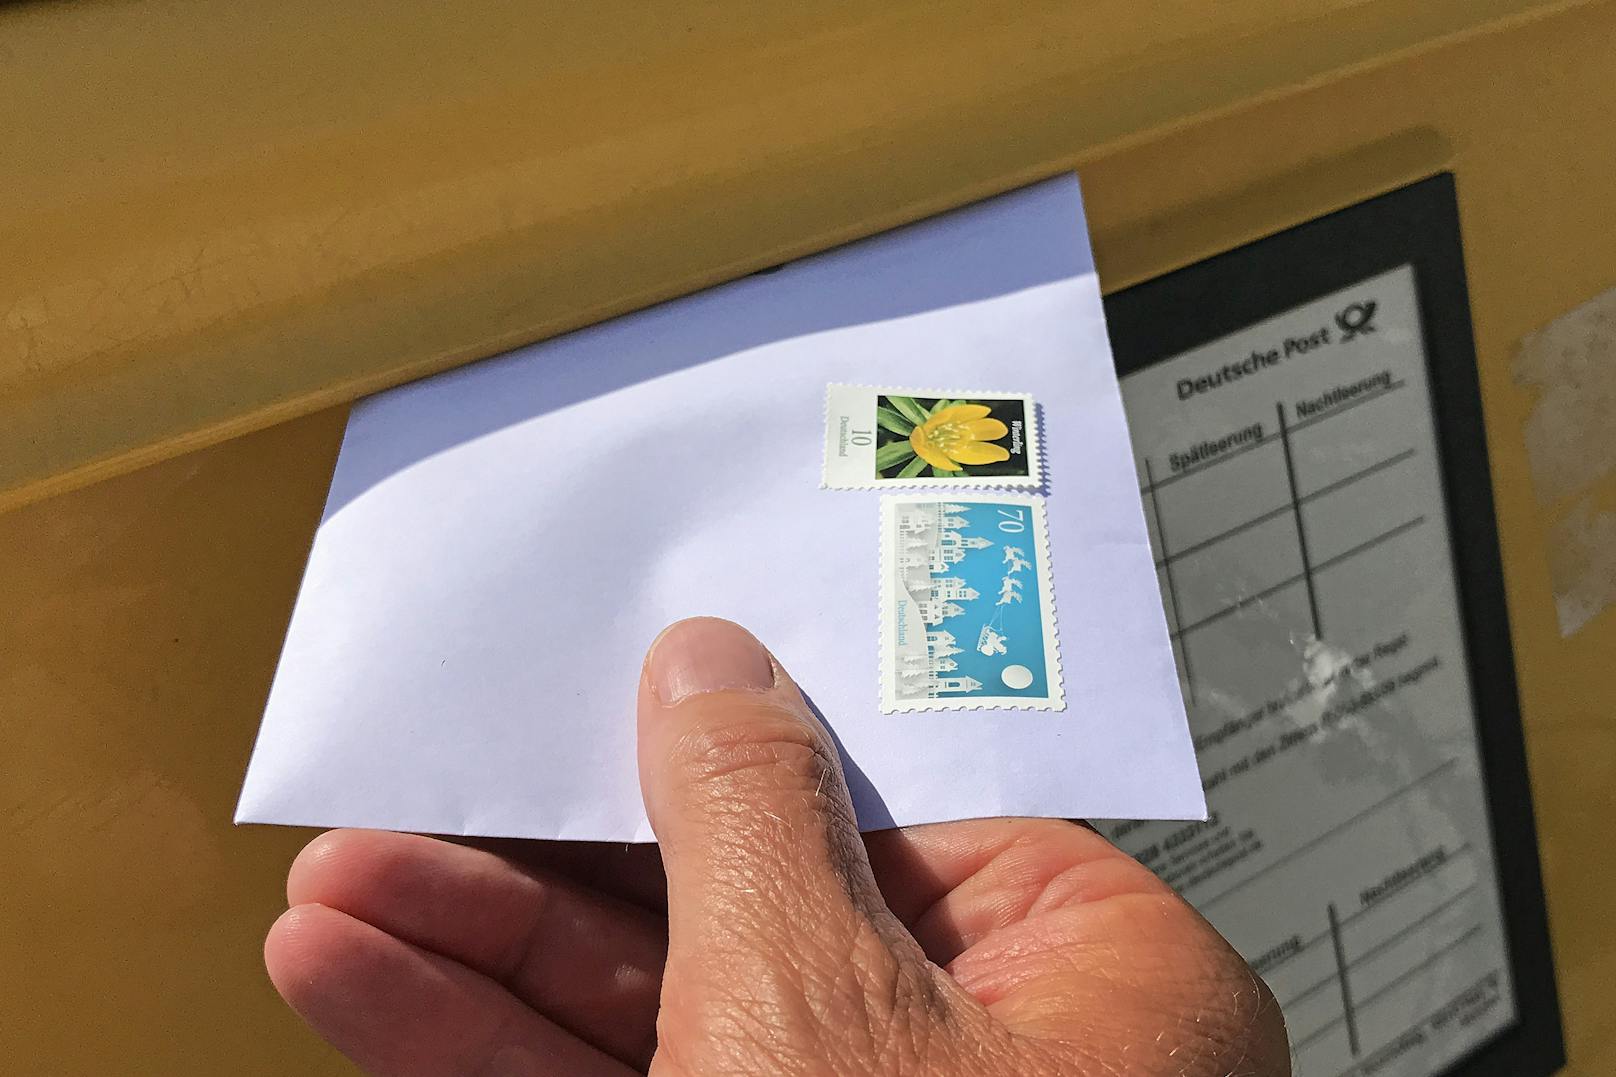 Post muss wegen verspätetem Brief 18.000 Euro zahlen